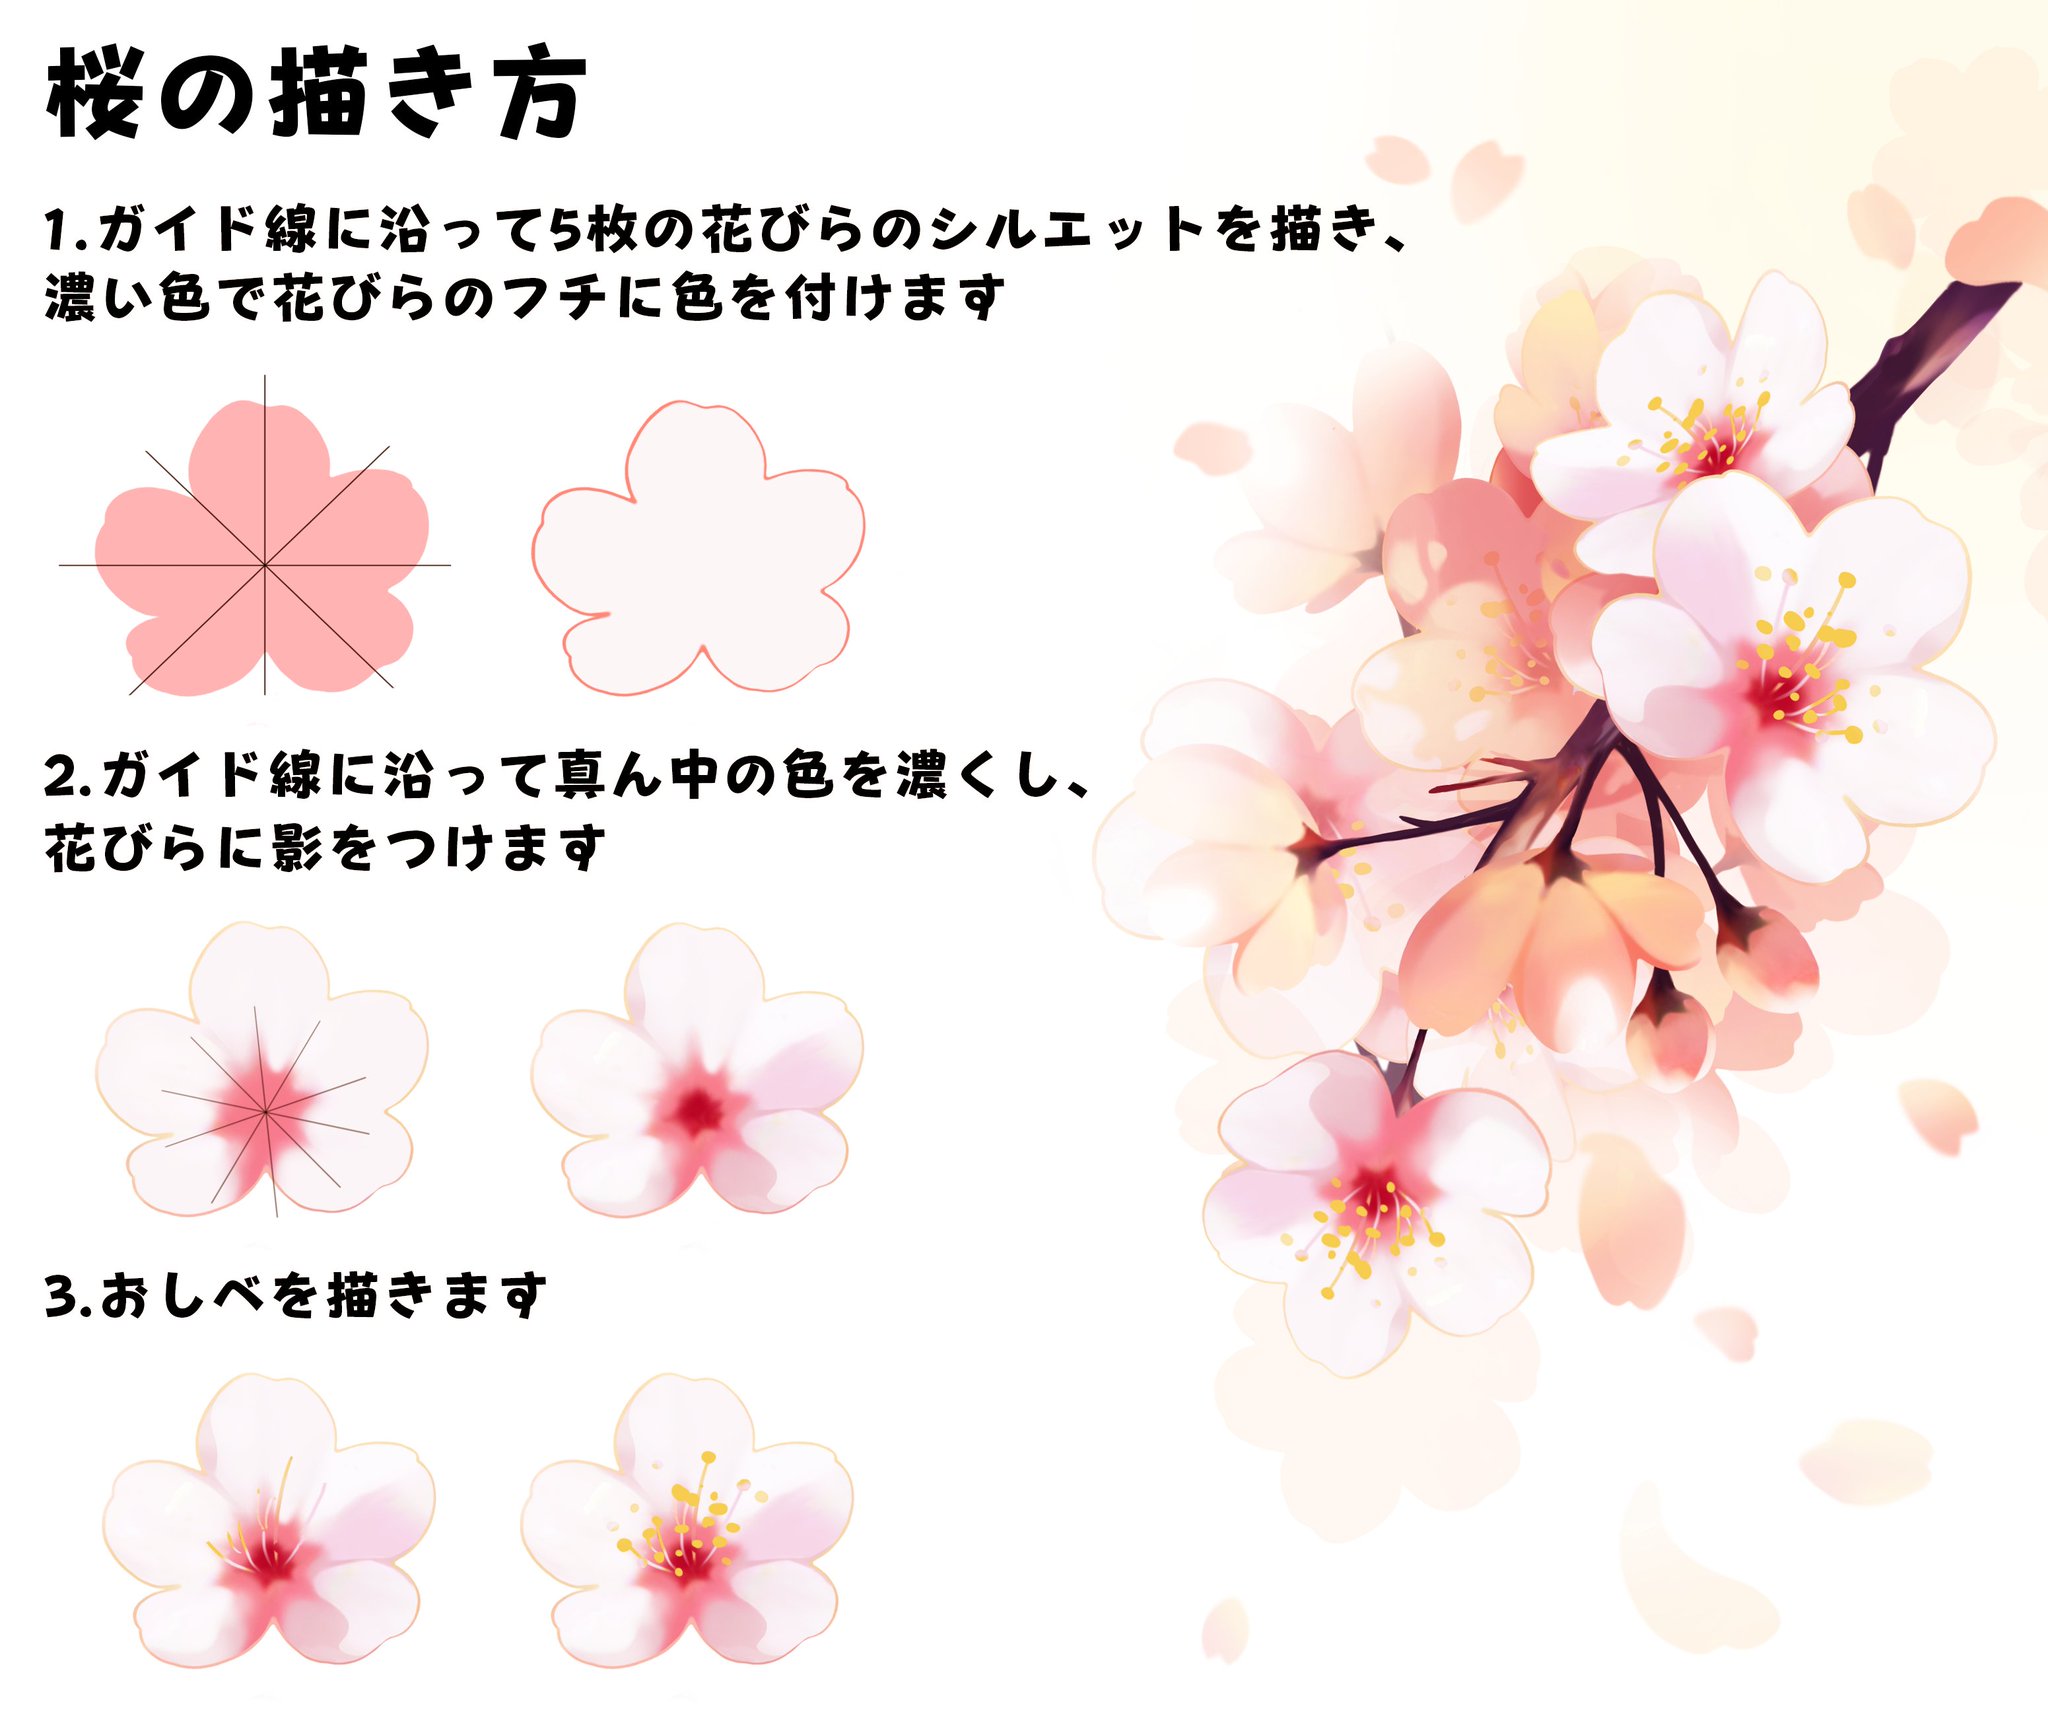 تويتر 紅豆井 على تويتر 桜の描き方 3月日は春分の日です W T Co Jhrg0ggltp 桜の花 春分の日 描き方 絵描きさんと繋がりたい イラスト好きな人と繋がりたい T Co Mvudinduz9